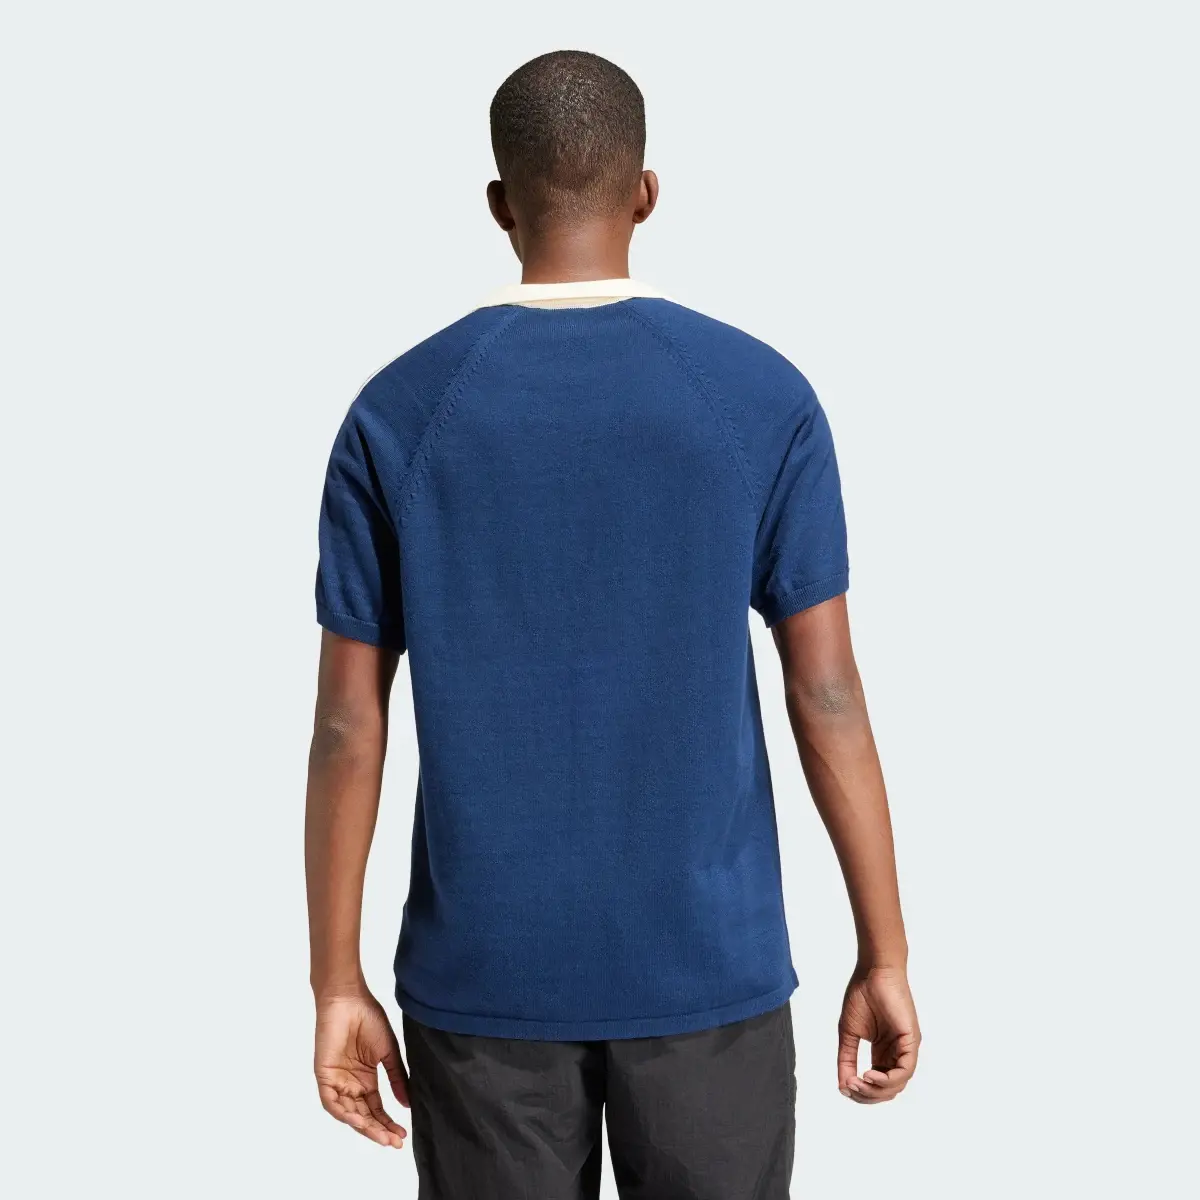 Adidas Premium Knitted Shirt. 3